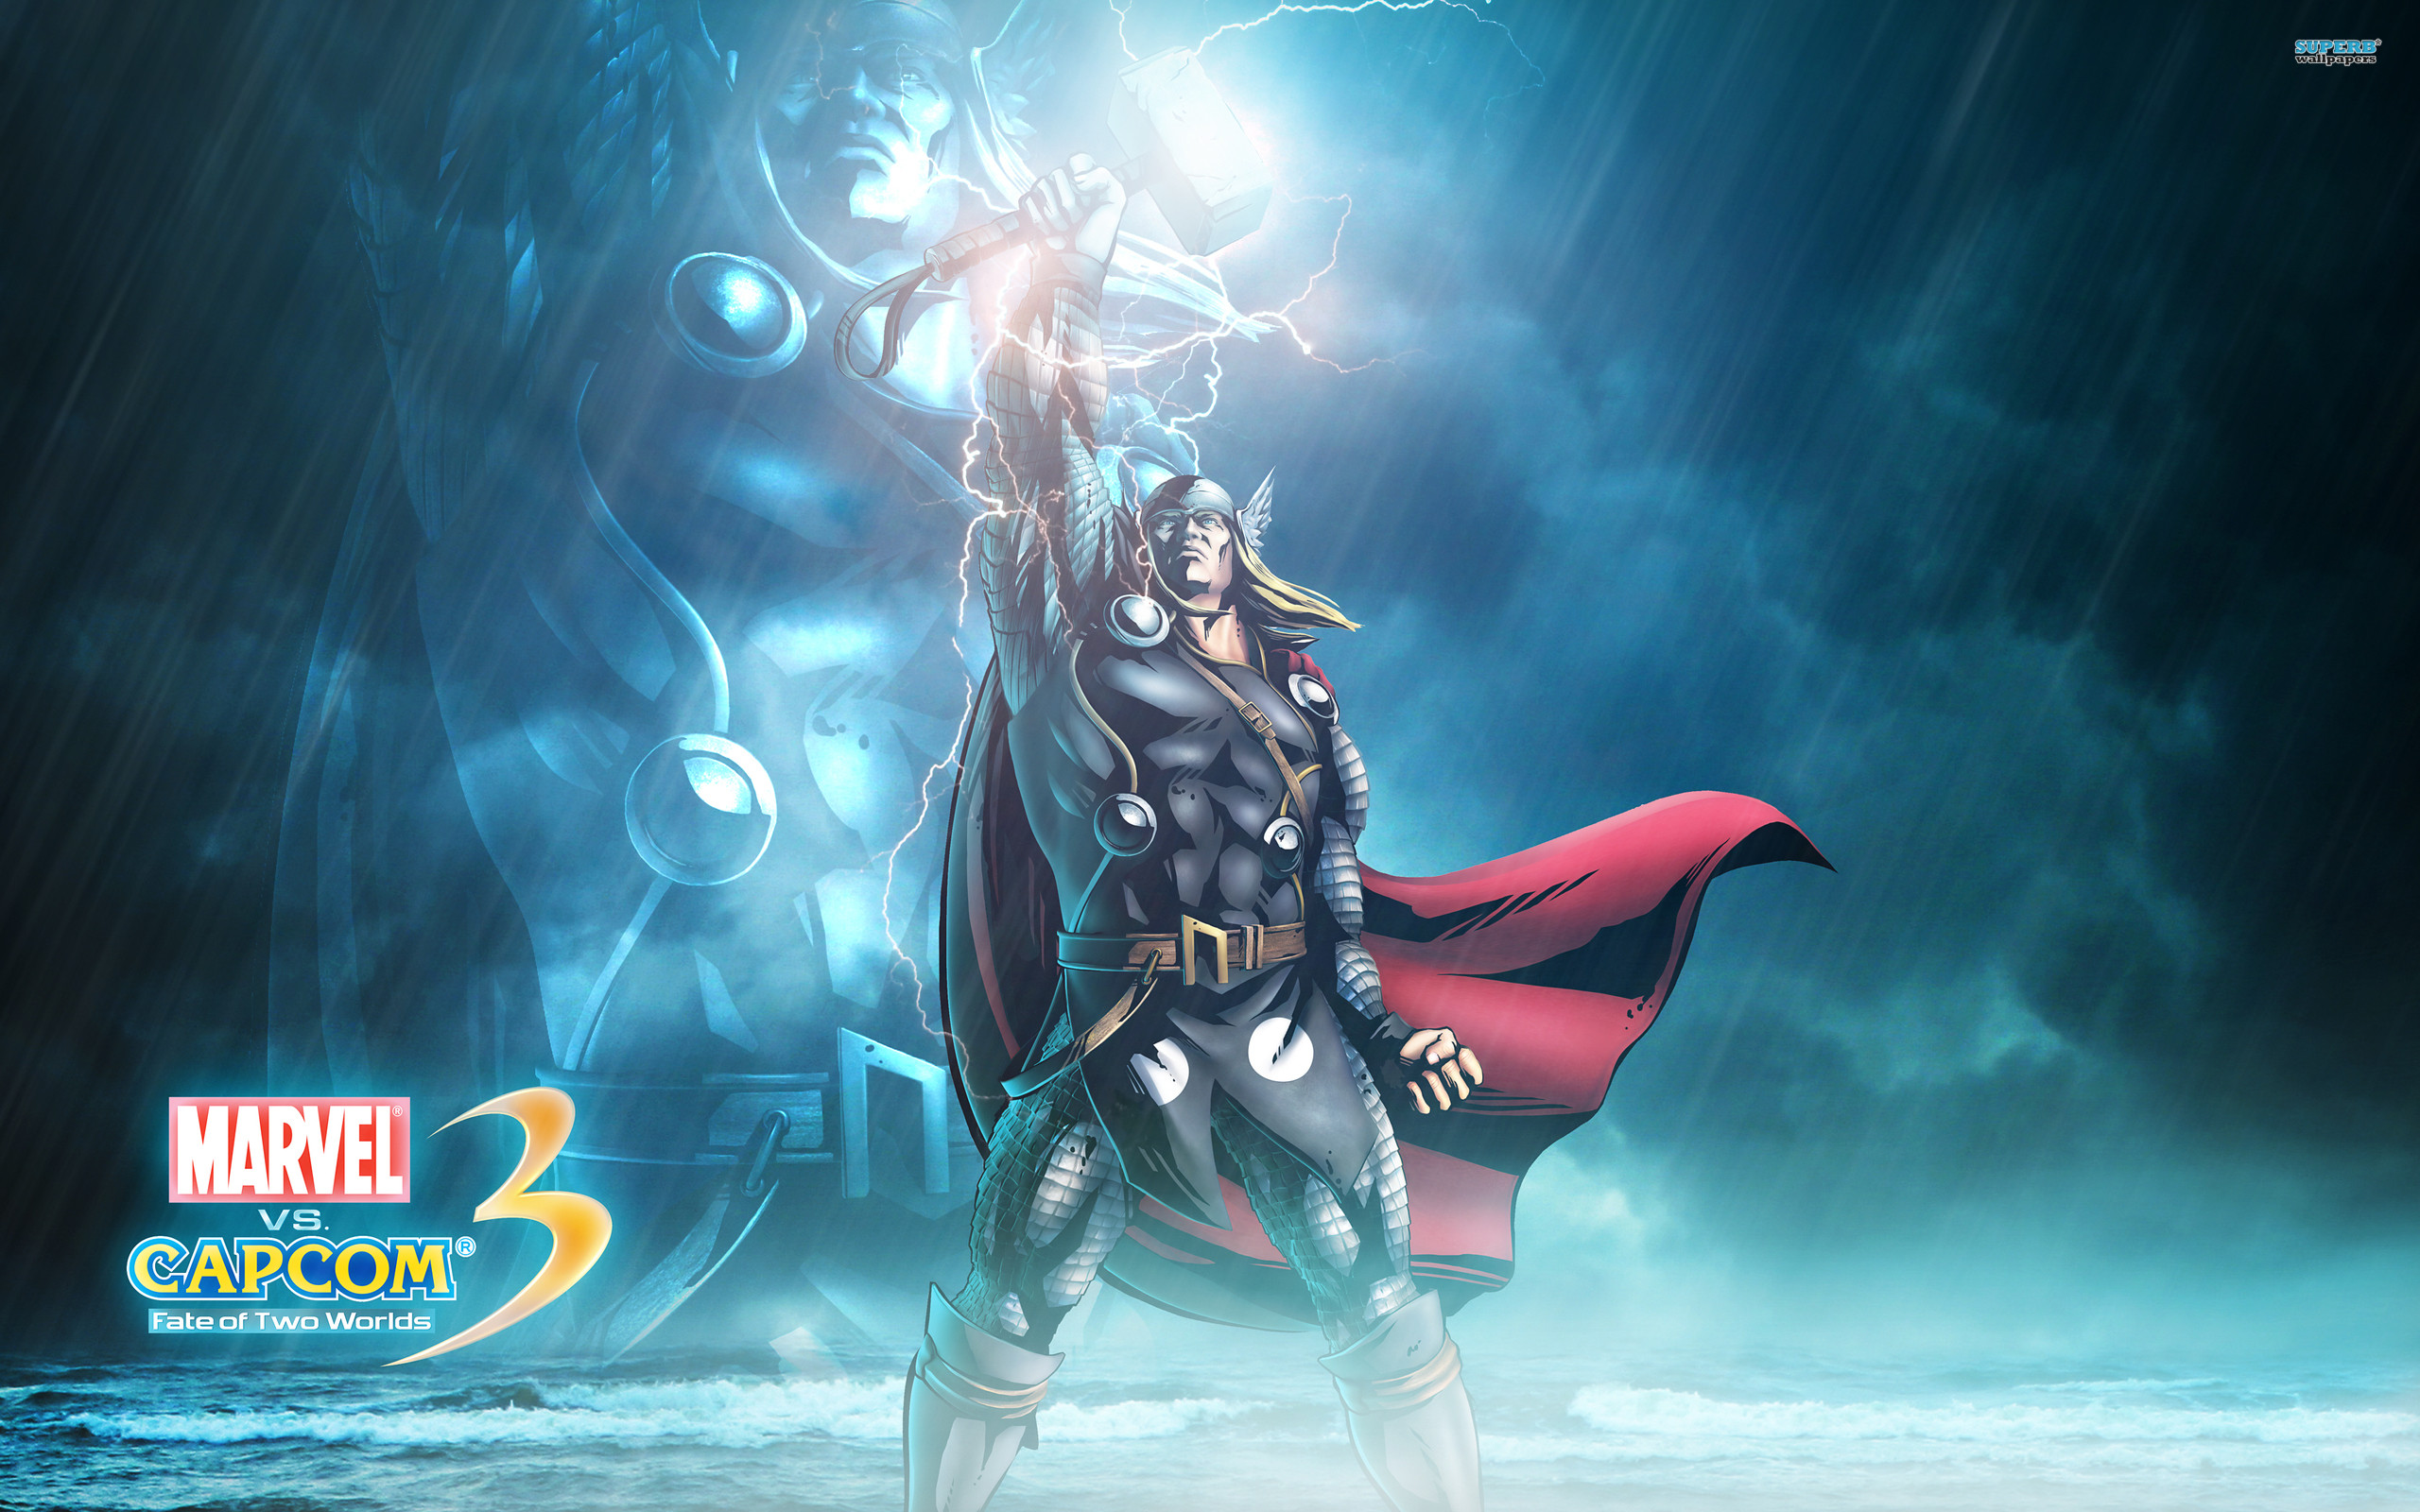 2560x1600 Wallpapers Marvel vs Capcom Heroes comics Thor hero Men Warriors Fantasy  Games  Man